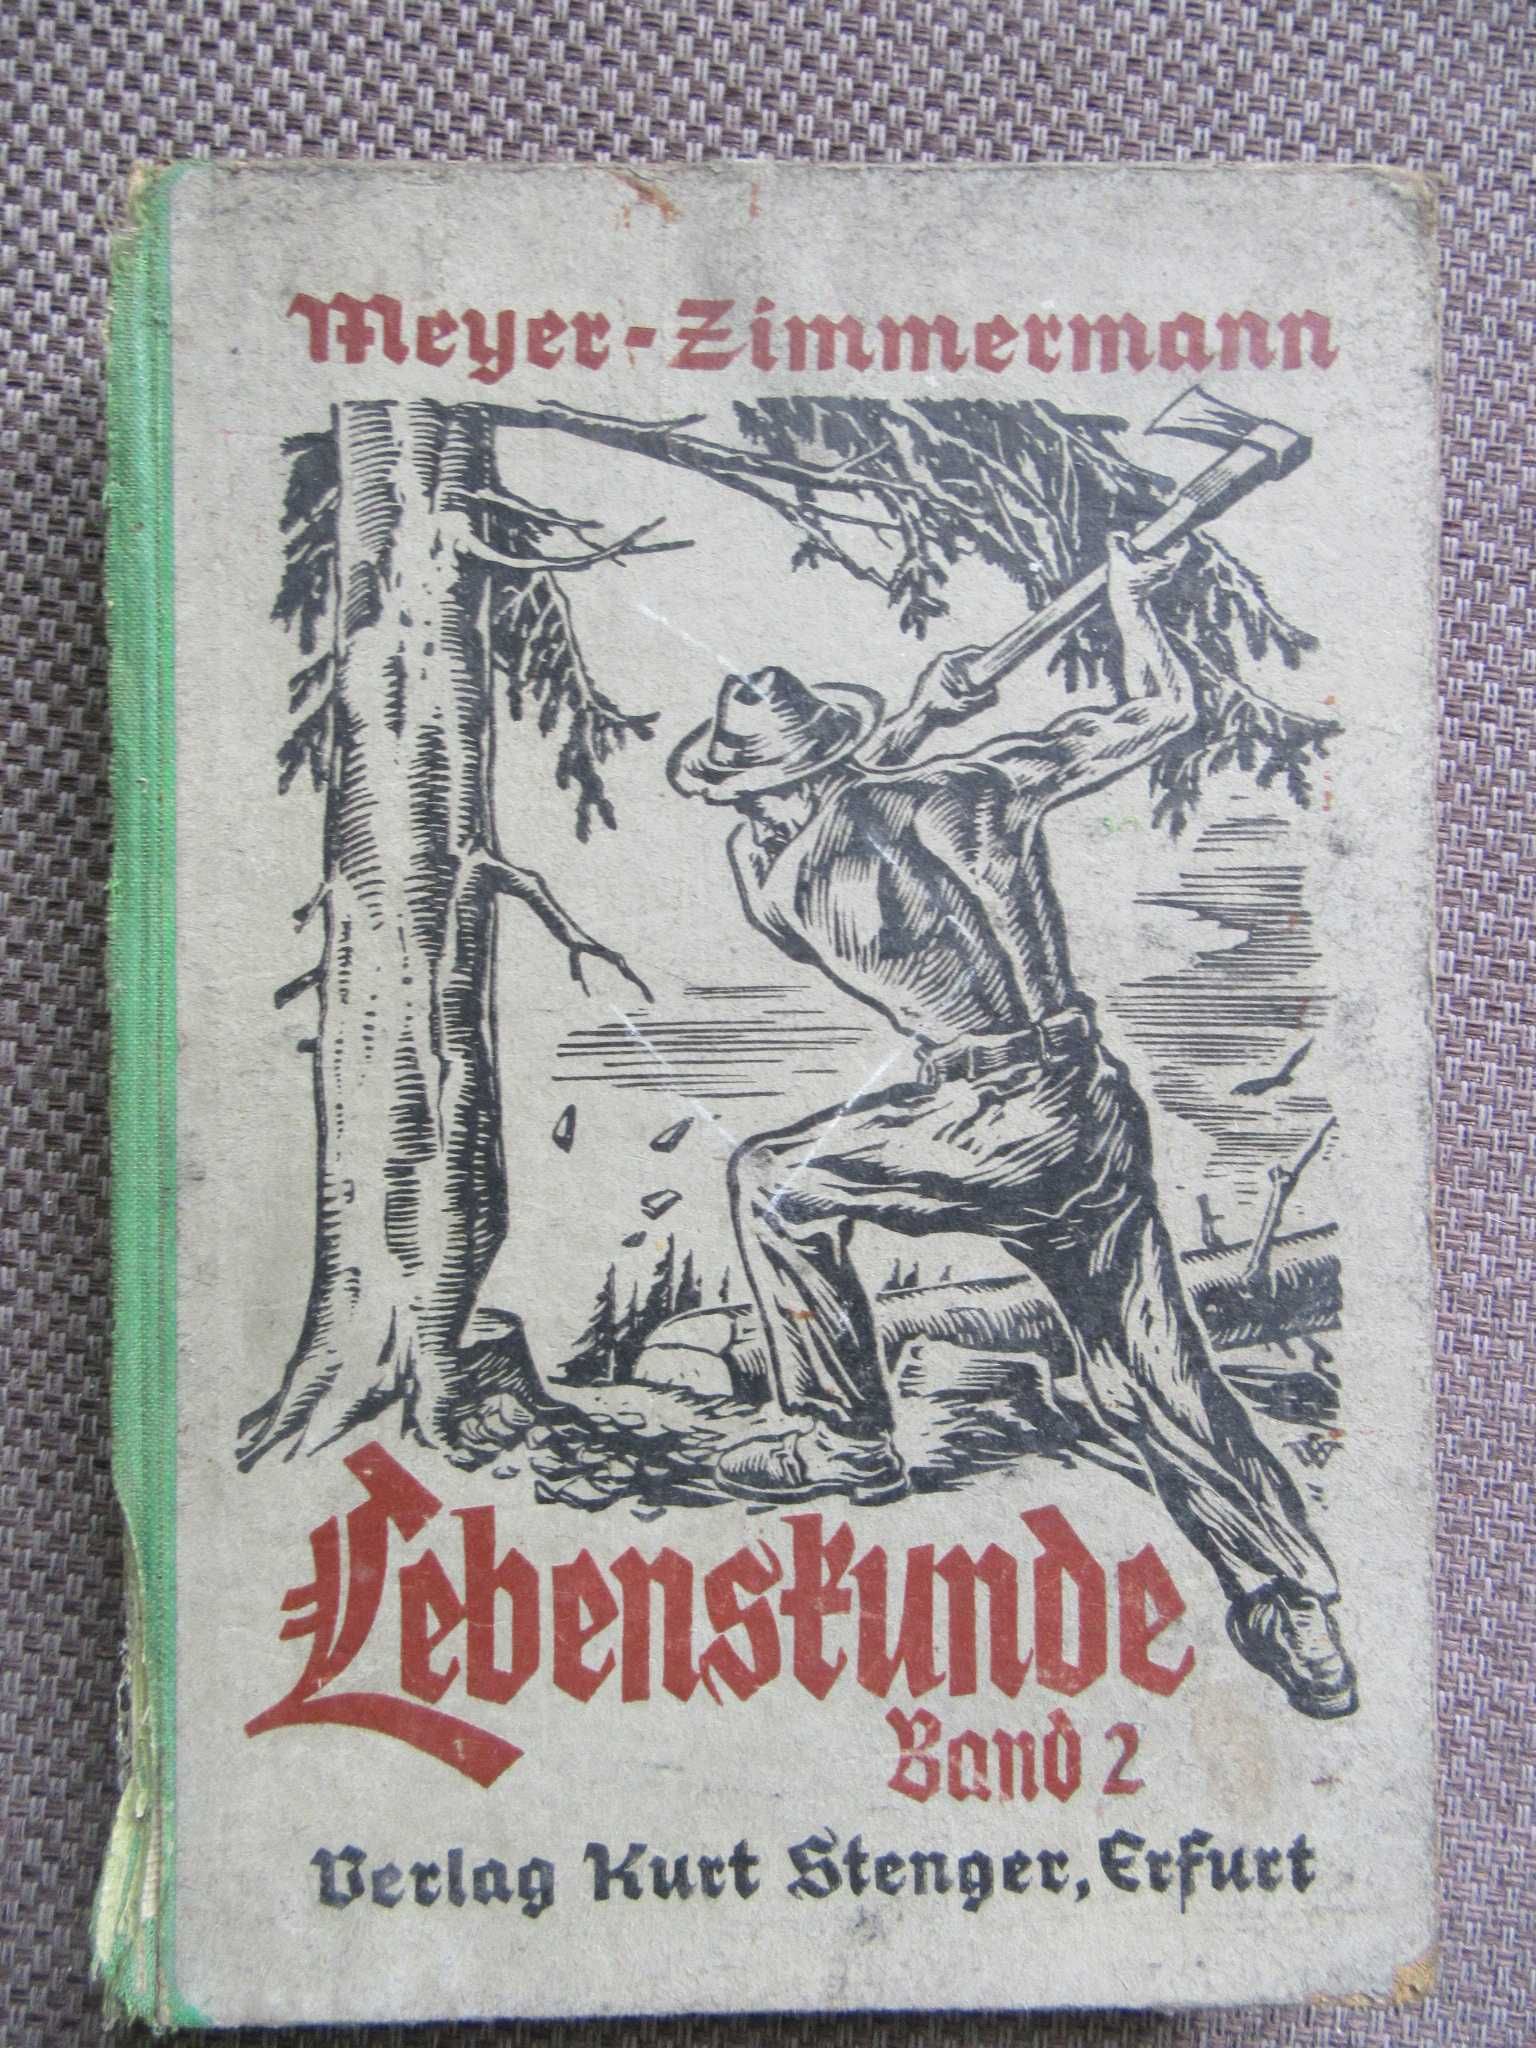 Lebebstunde Band 2 Meyer-Zimmermann